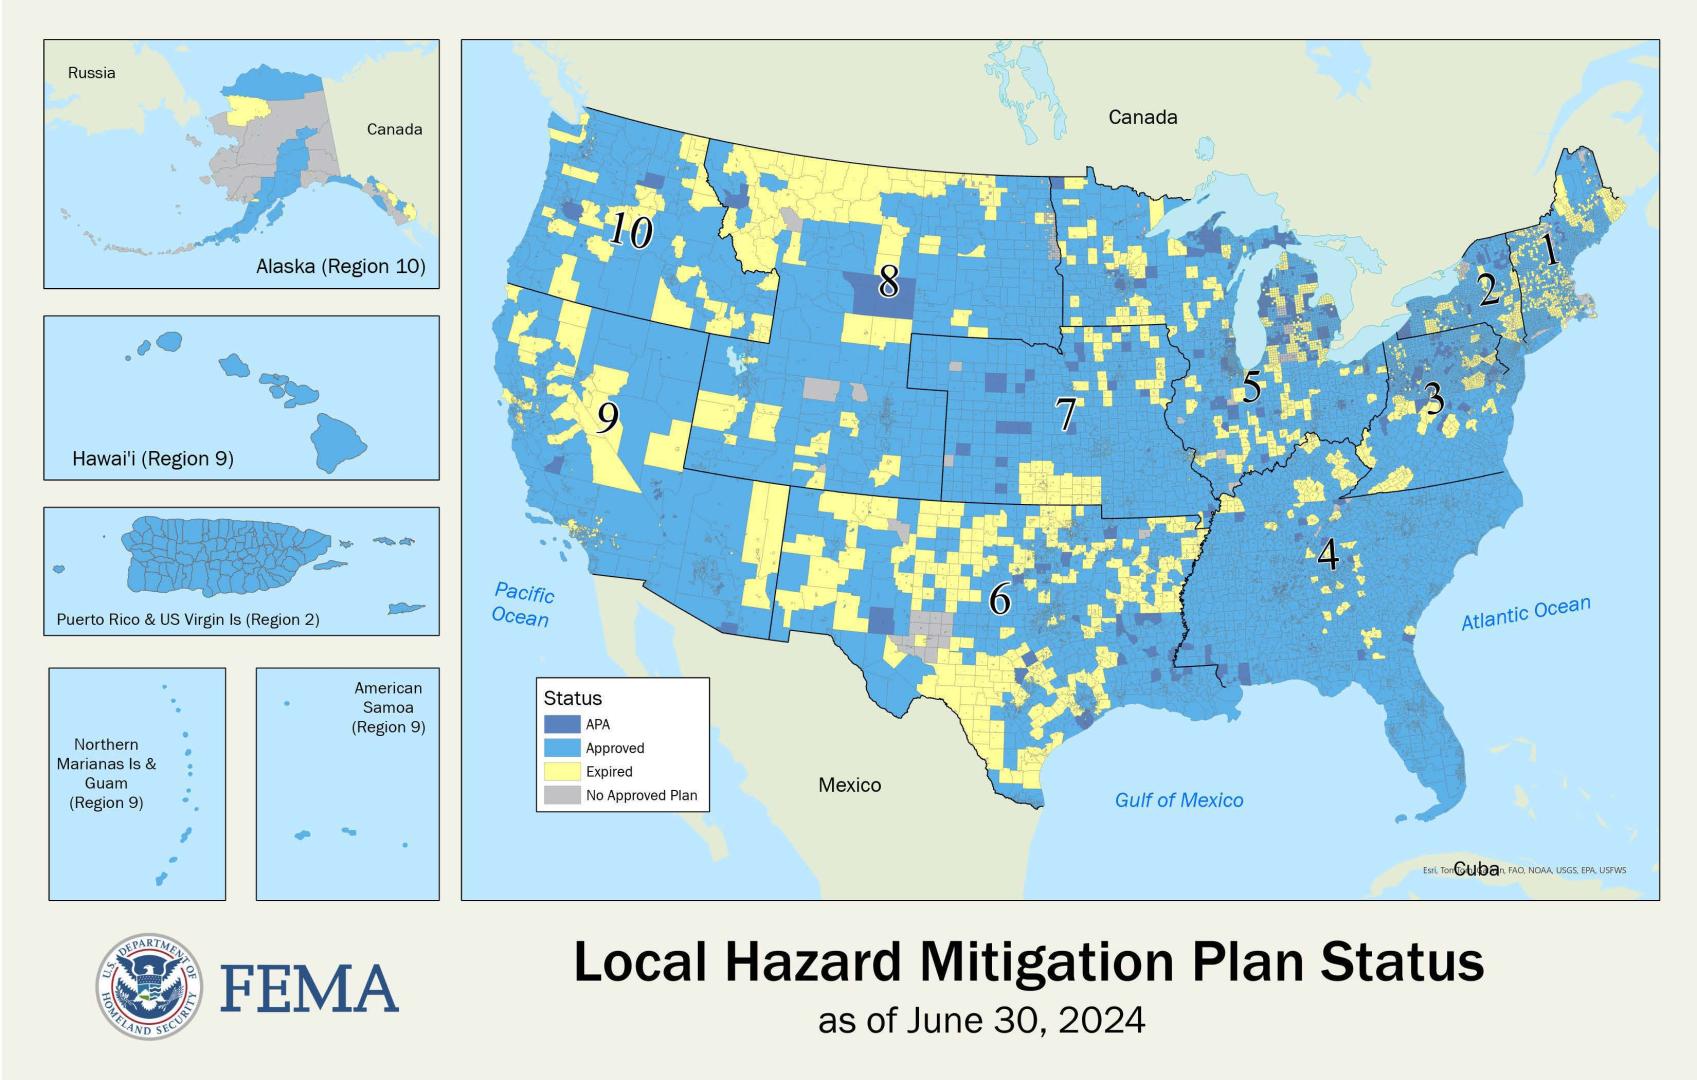 Local Hazard Mitigation Plan Status Map as of June 30, 2024